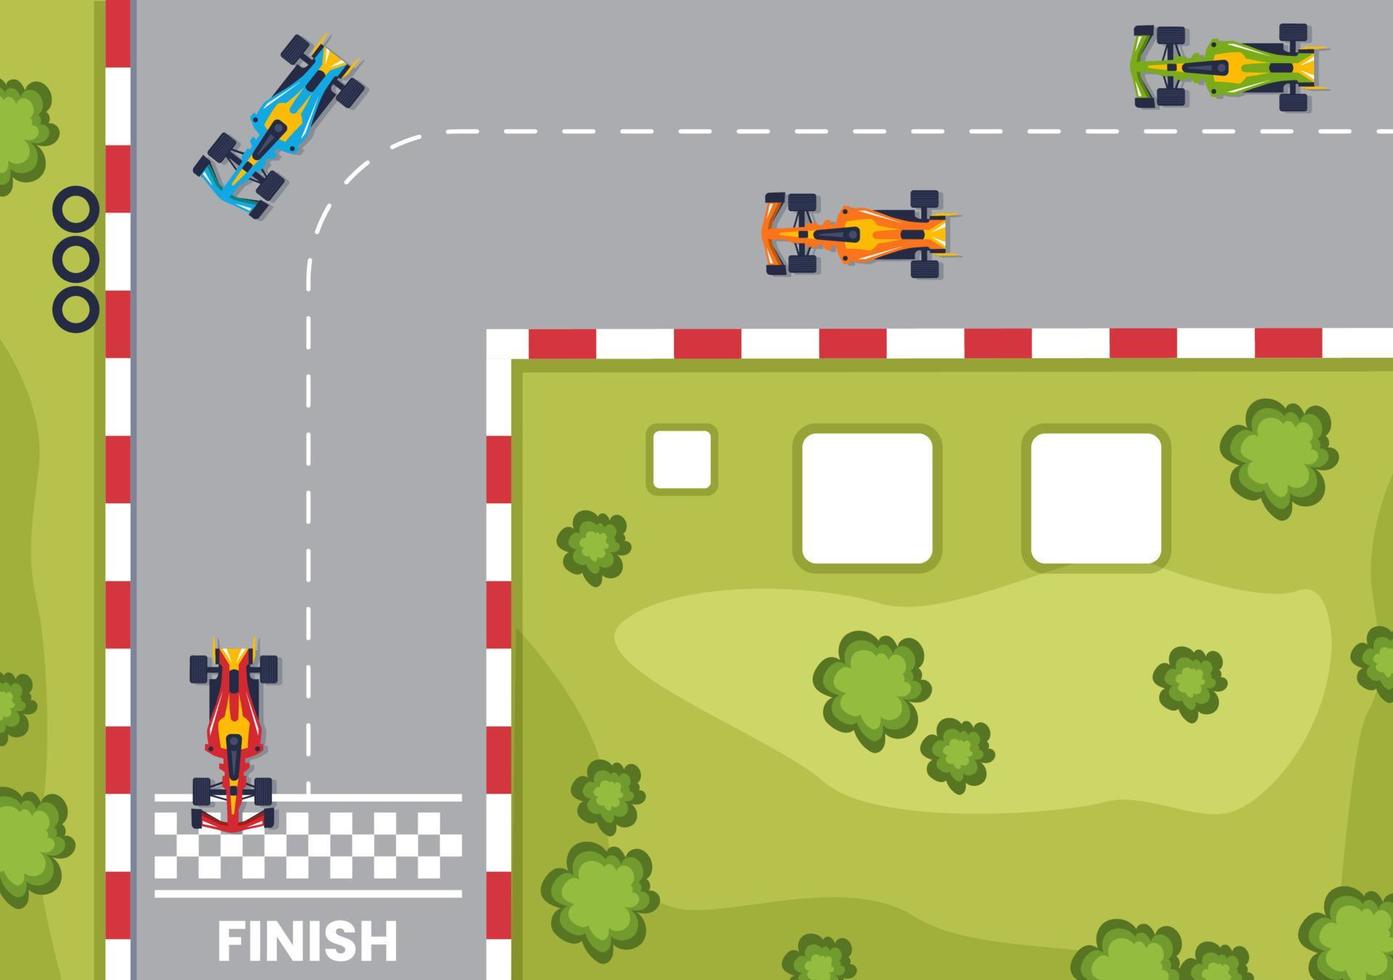 Fórmula de carreras de autos deportivos alcanzan en el circuito de carreras la ilustración de dibujos animados de la línea de meta para ganar el campeonato en un diseño de estilo plano vector